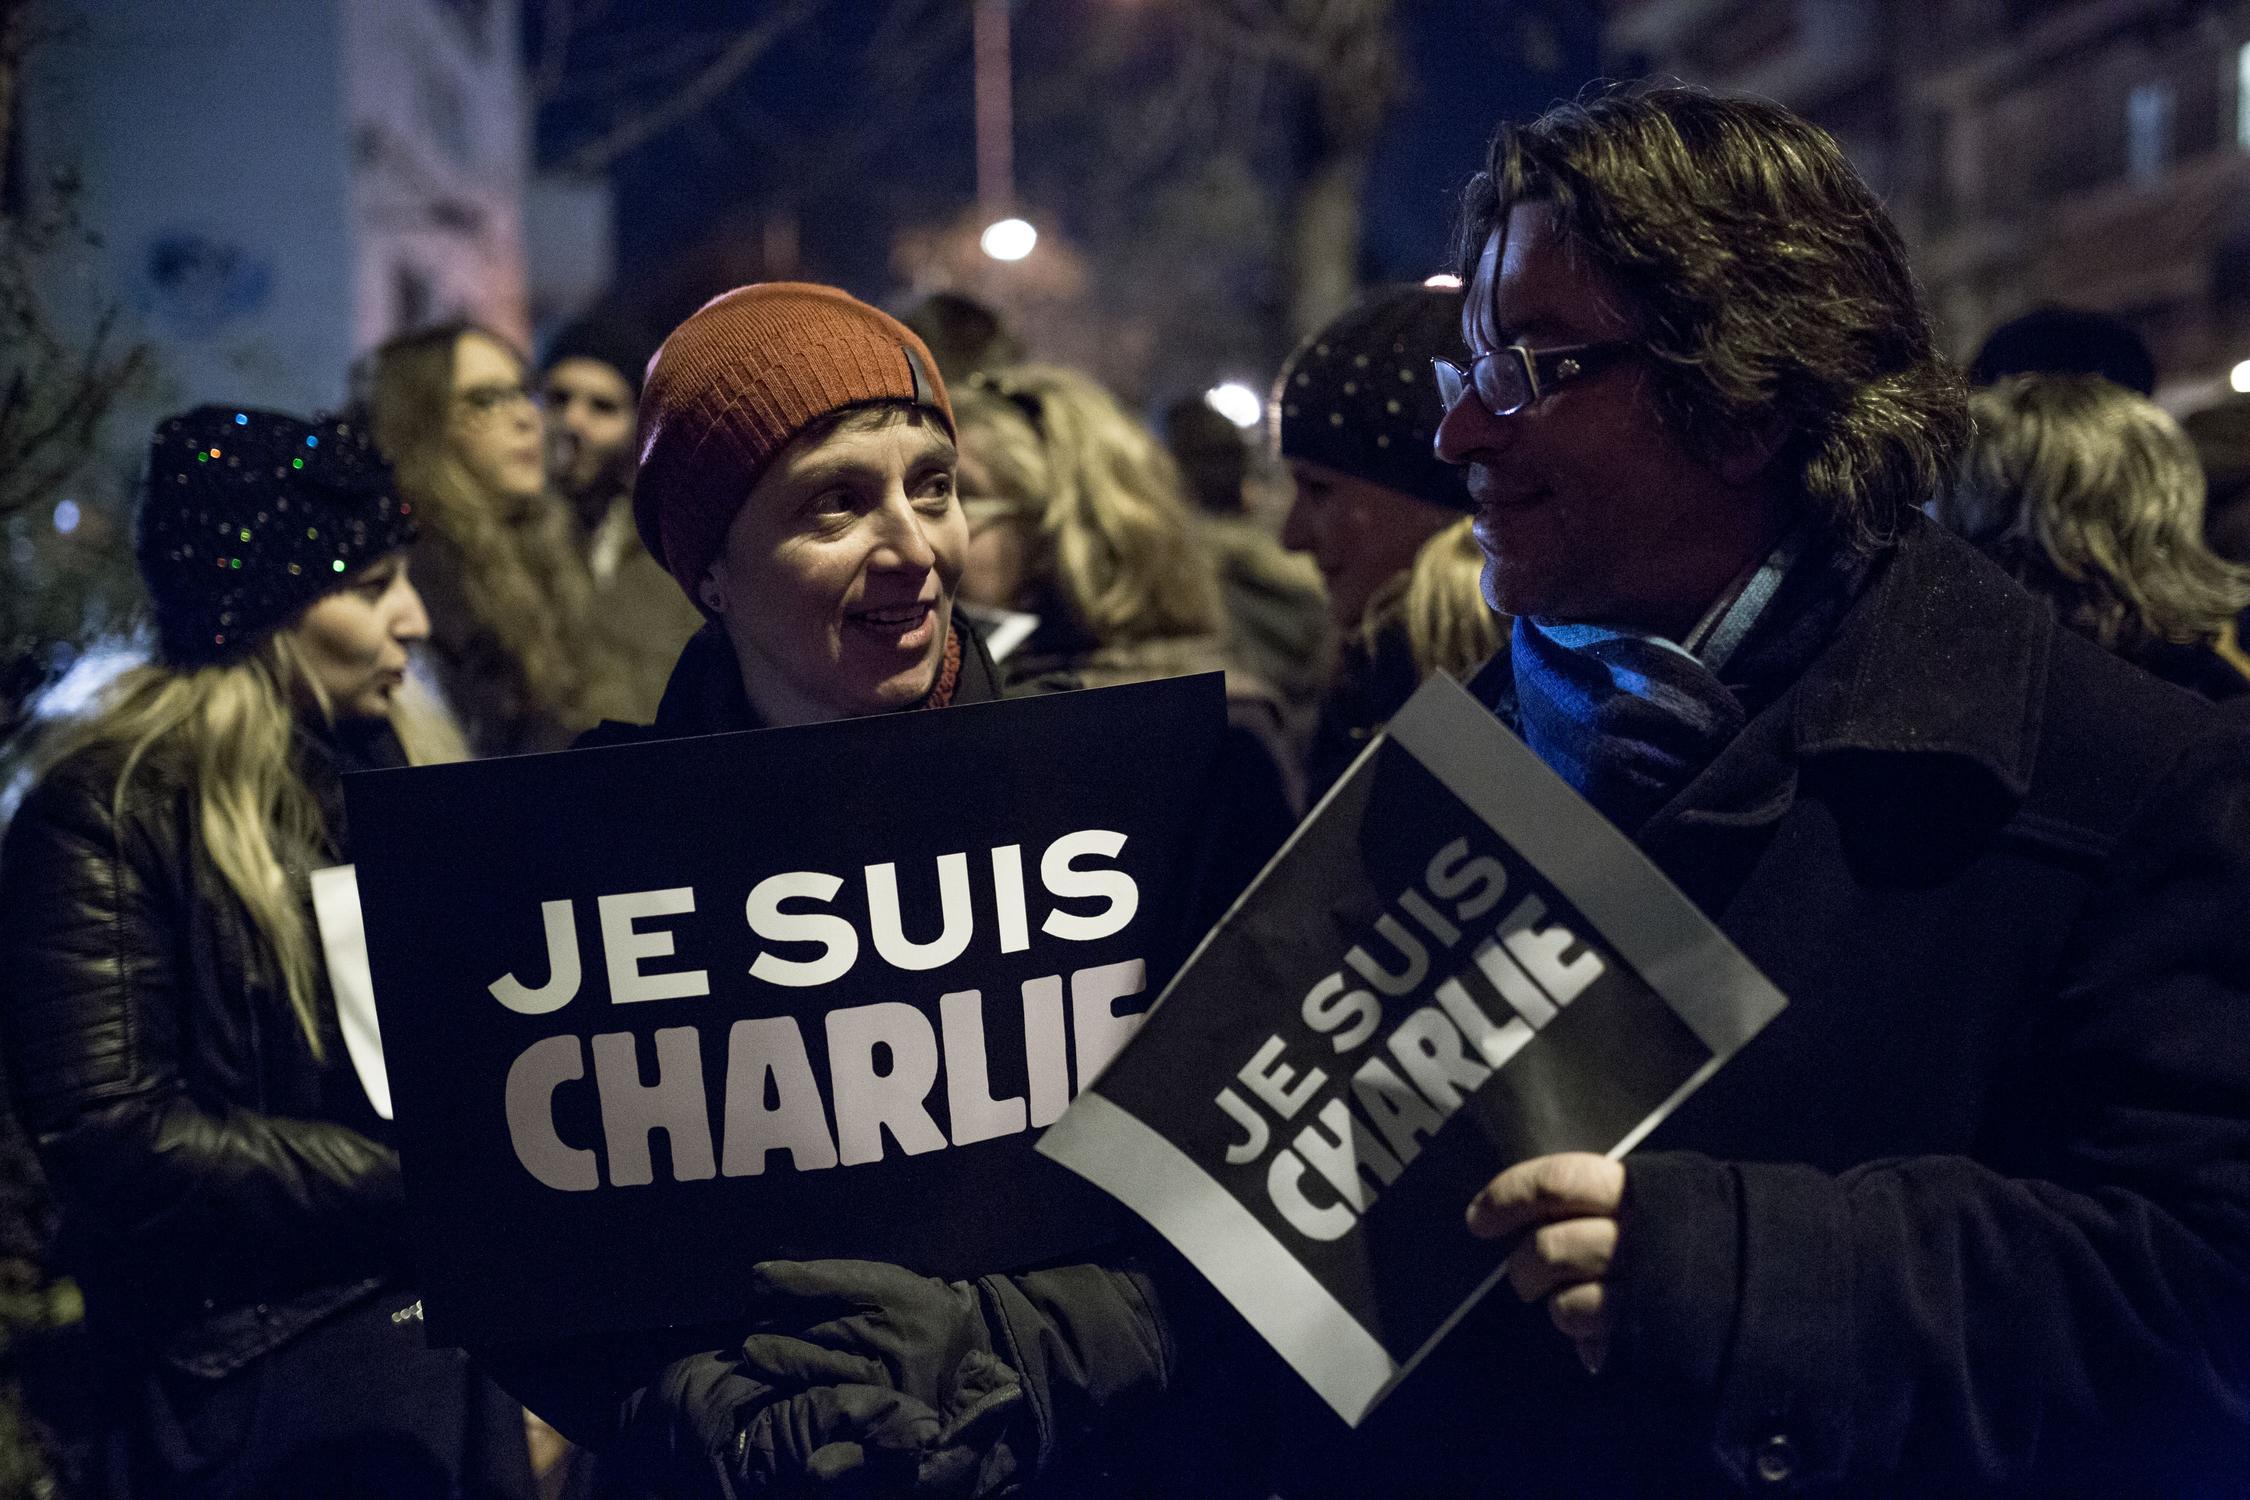 Ξεπέρασε τα 5 εκατ. tweets το σύνθημα #JeSuisCharlie